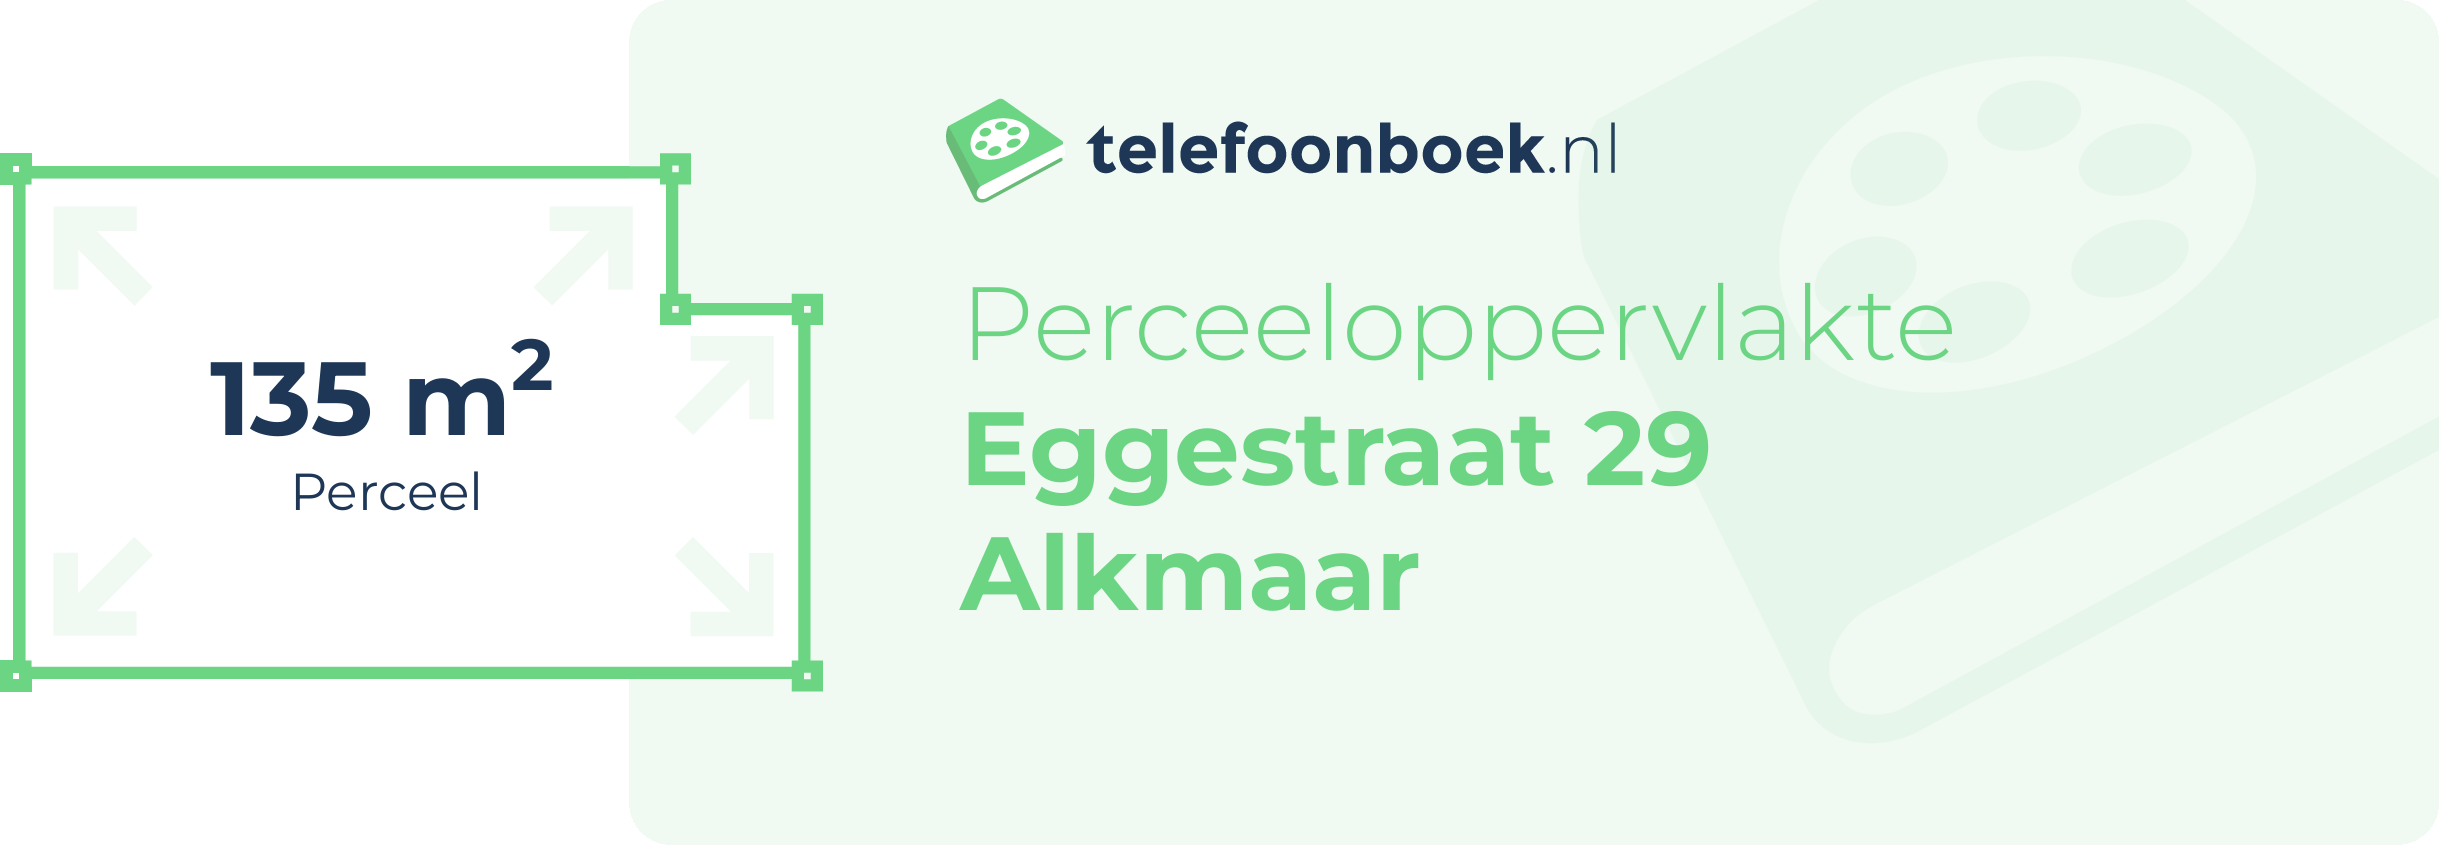 Perceeloppervlakte Eggestraat 29 Alkmaar